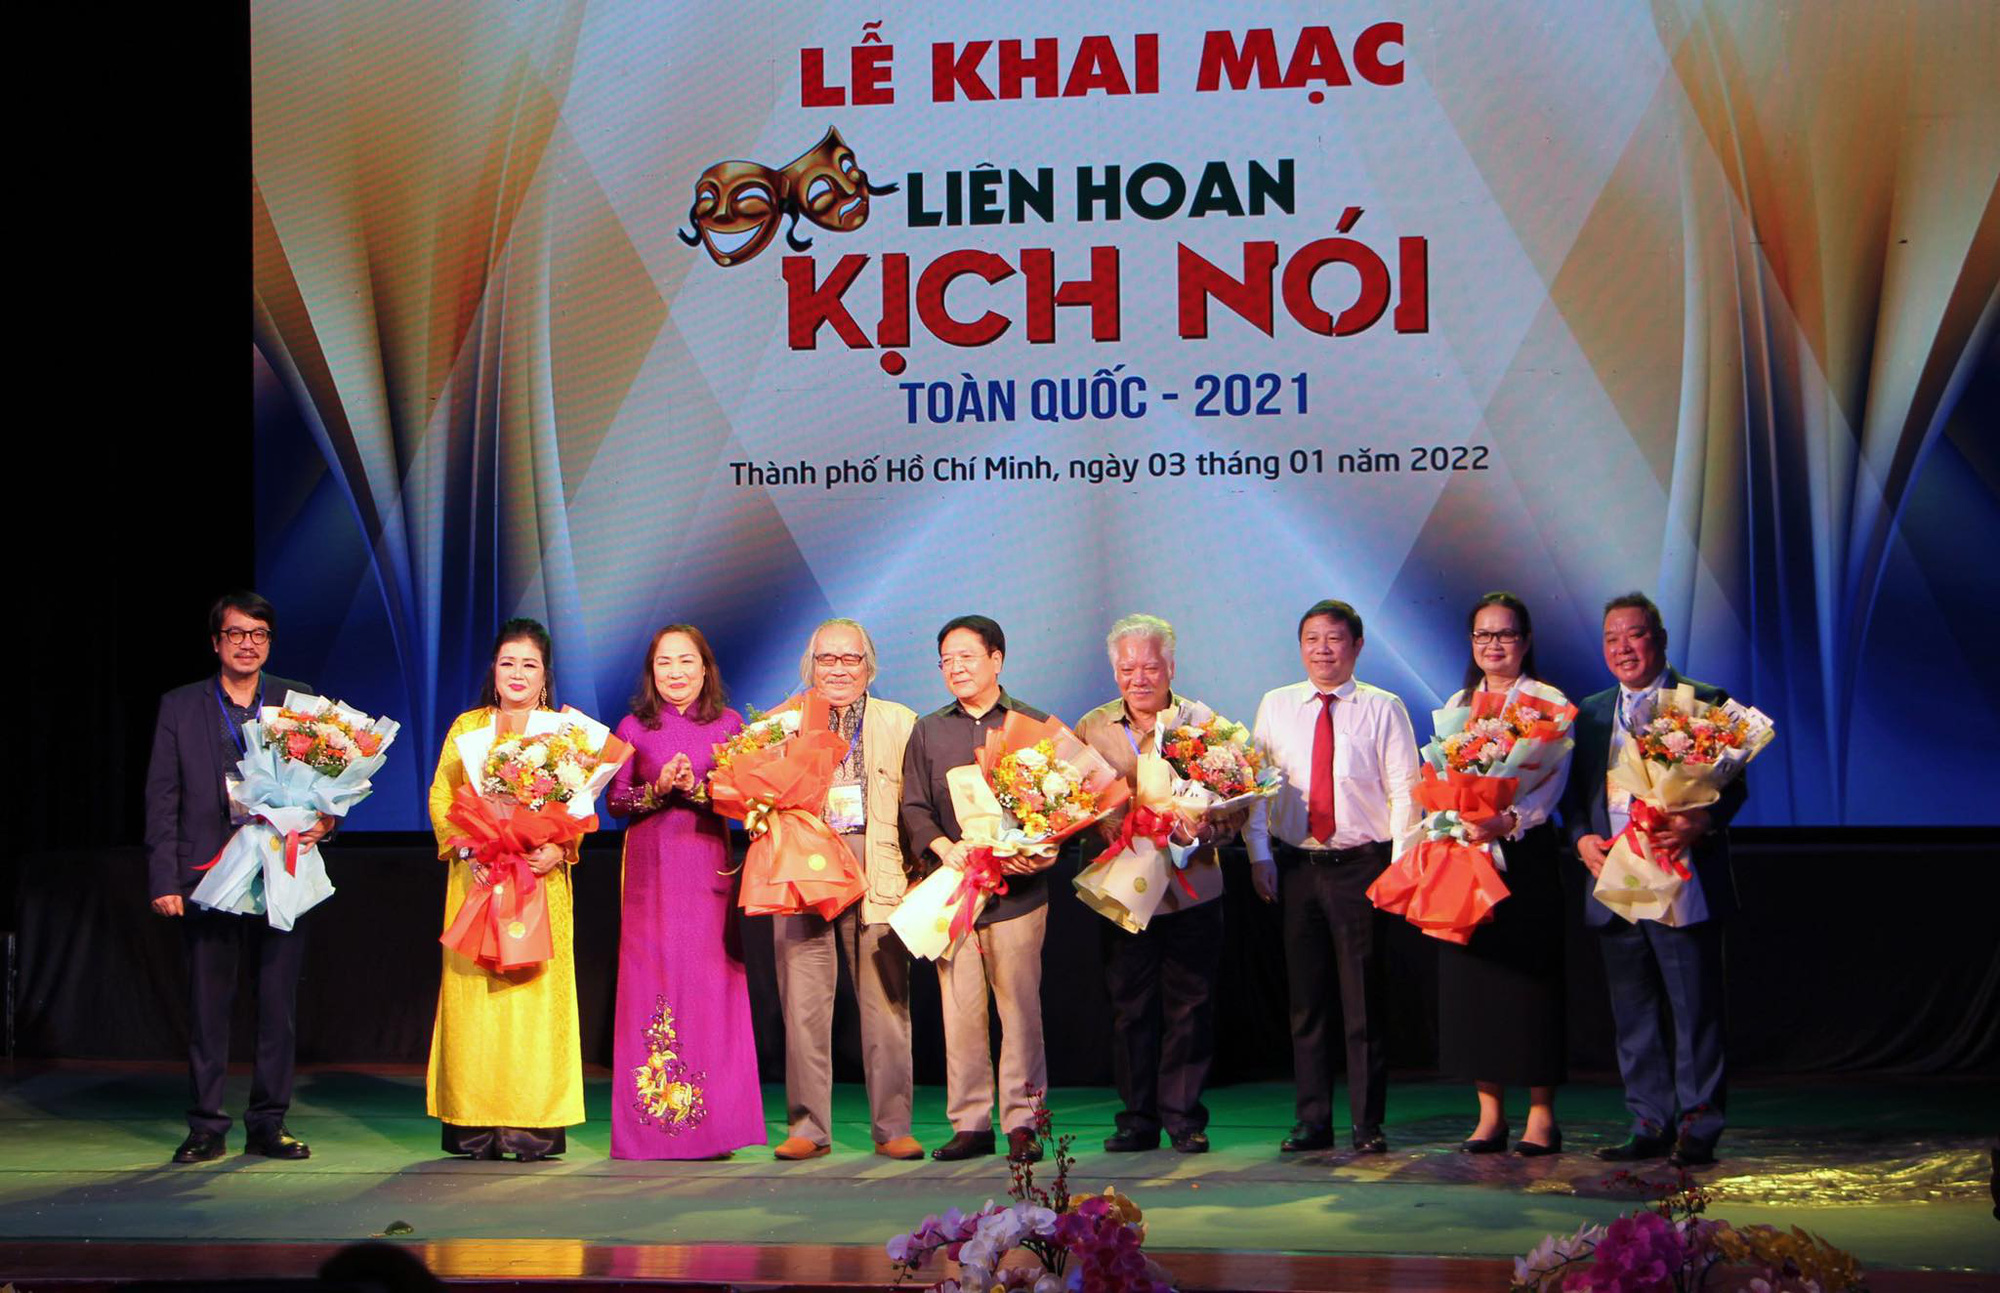 Khai mạc Liên hoan Kịch nói toàn quốc tại TP Hồ Chí Minh - Ảnh 1.